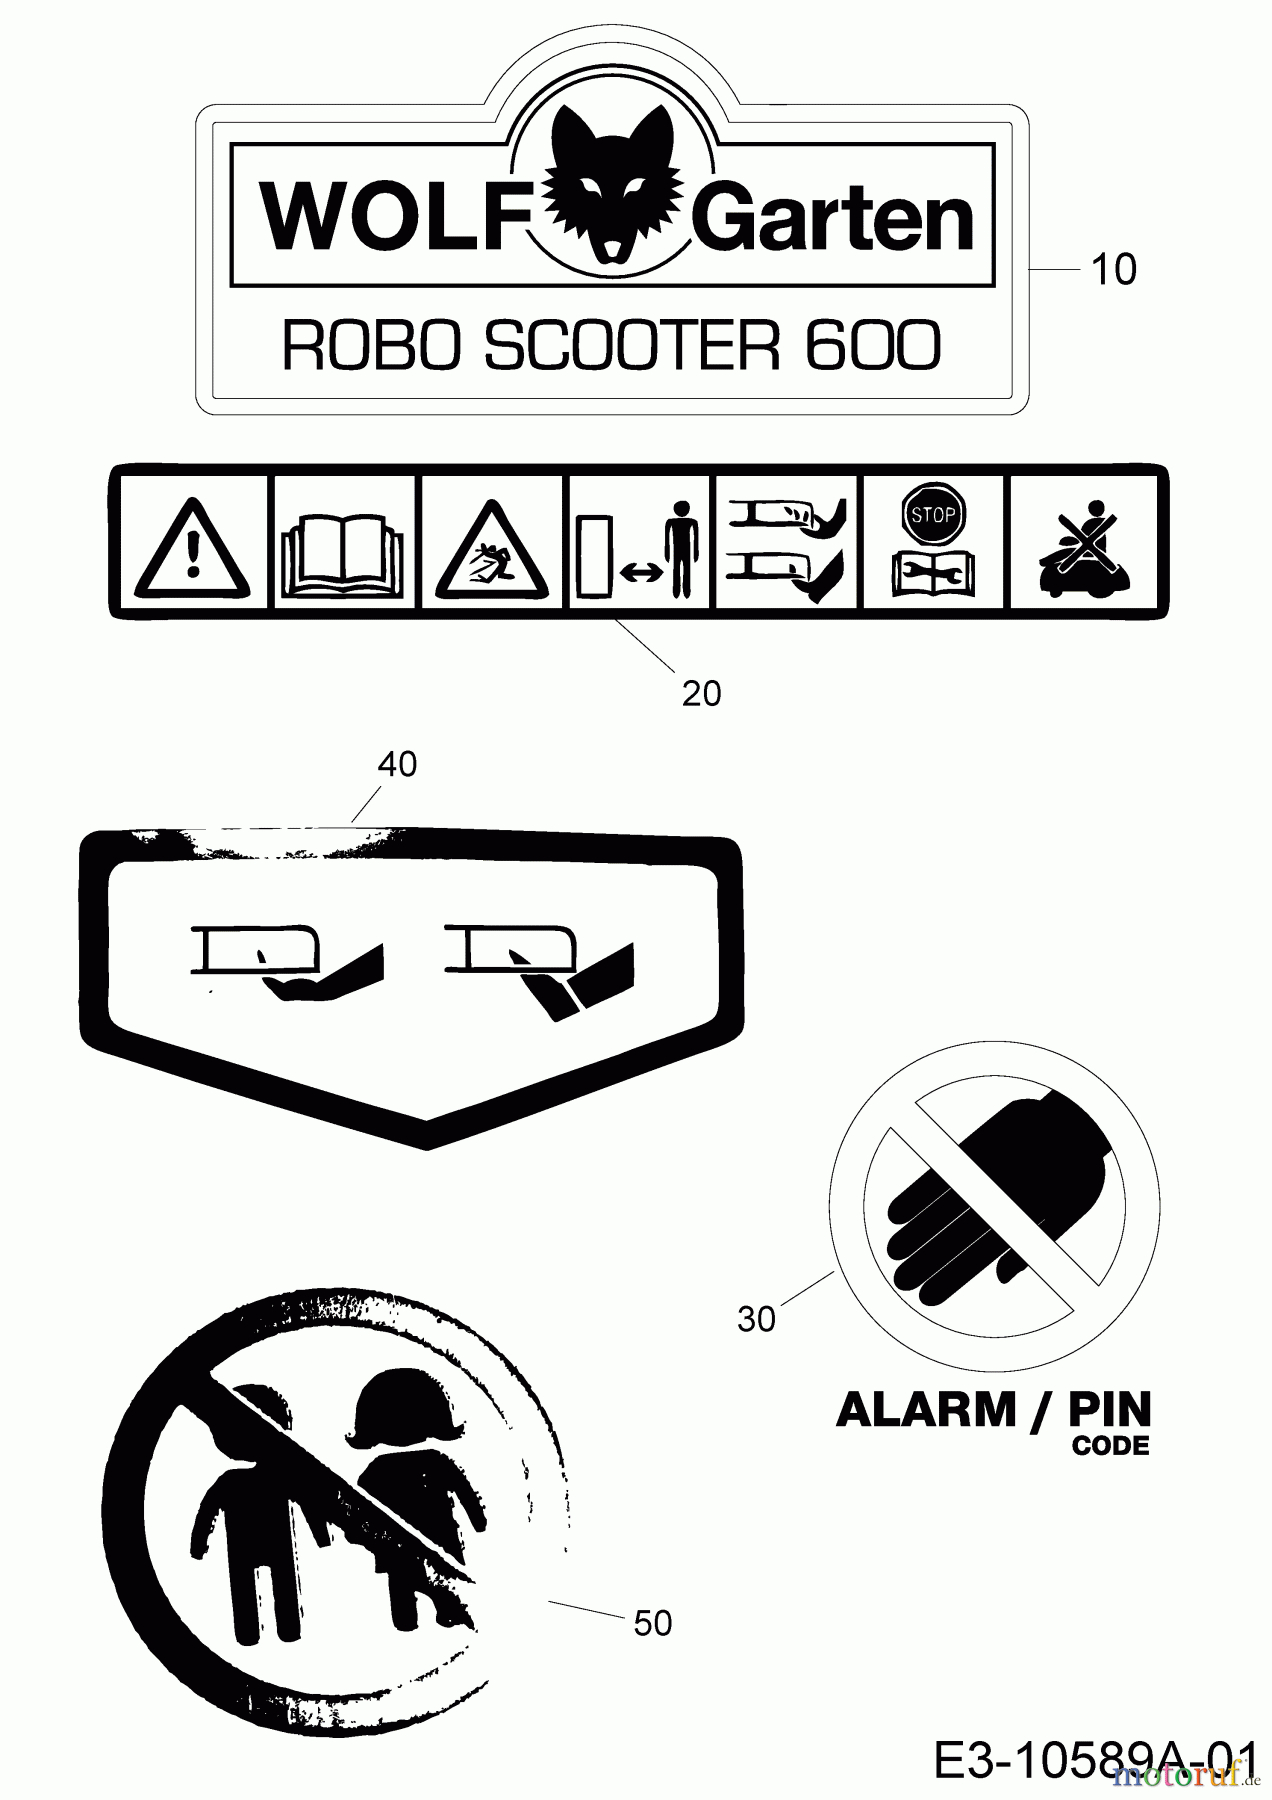  Wolf-Garten Tondeuse robot Robo Scooter 600 18AO06LF650  (2014) Decalcomanie